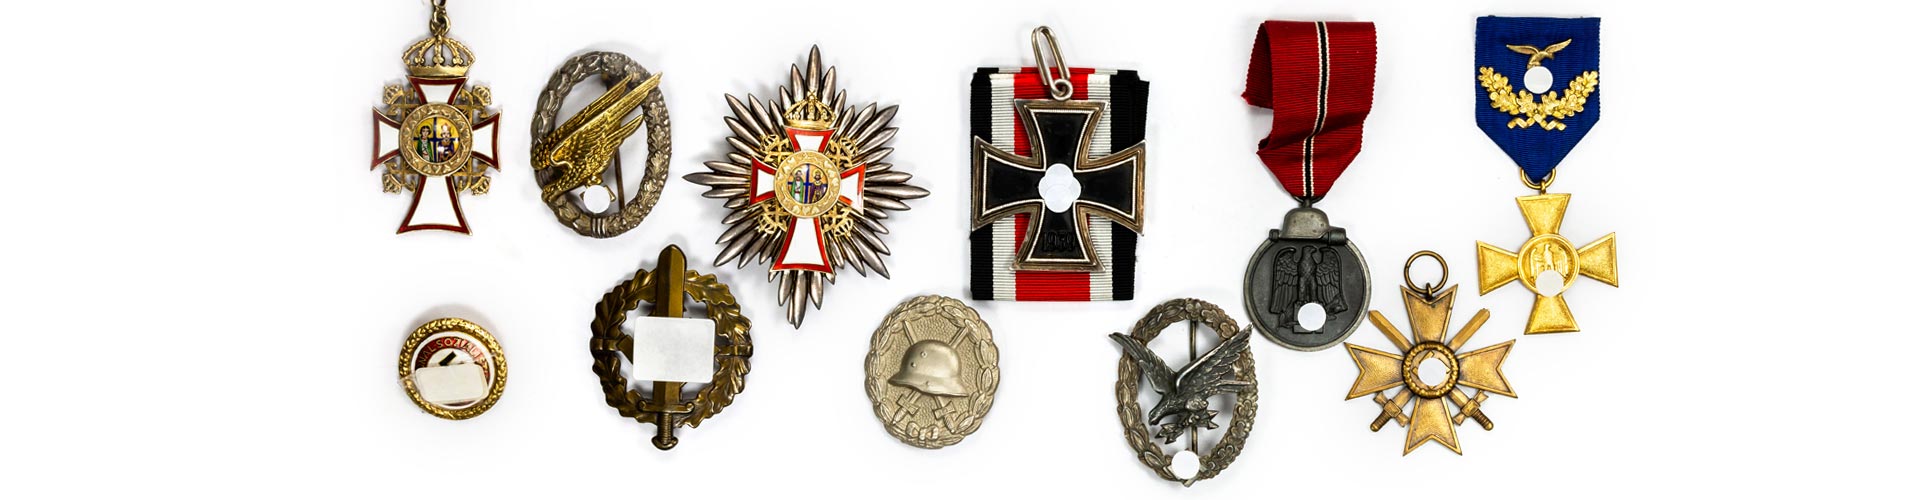 Verschiedene Abzeichen, Orden und Ordenskreuze unter anderem aus dem Zweiten Weltkrieg